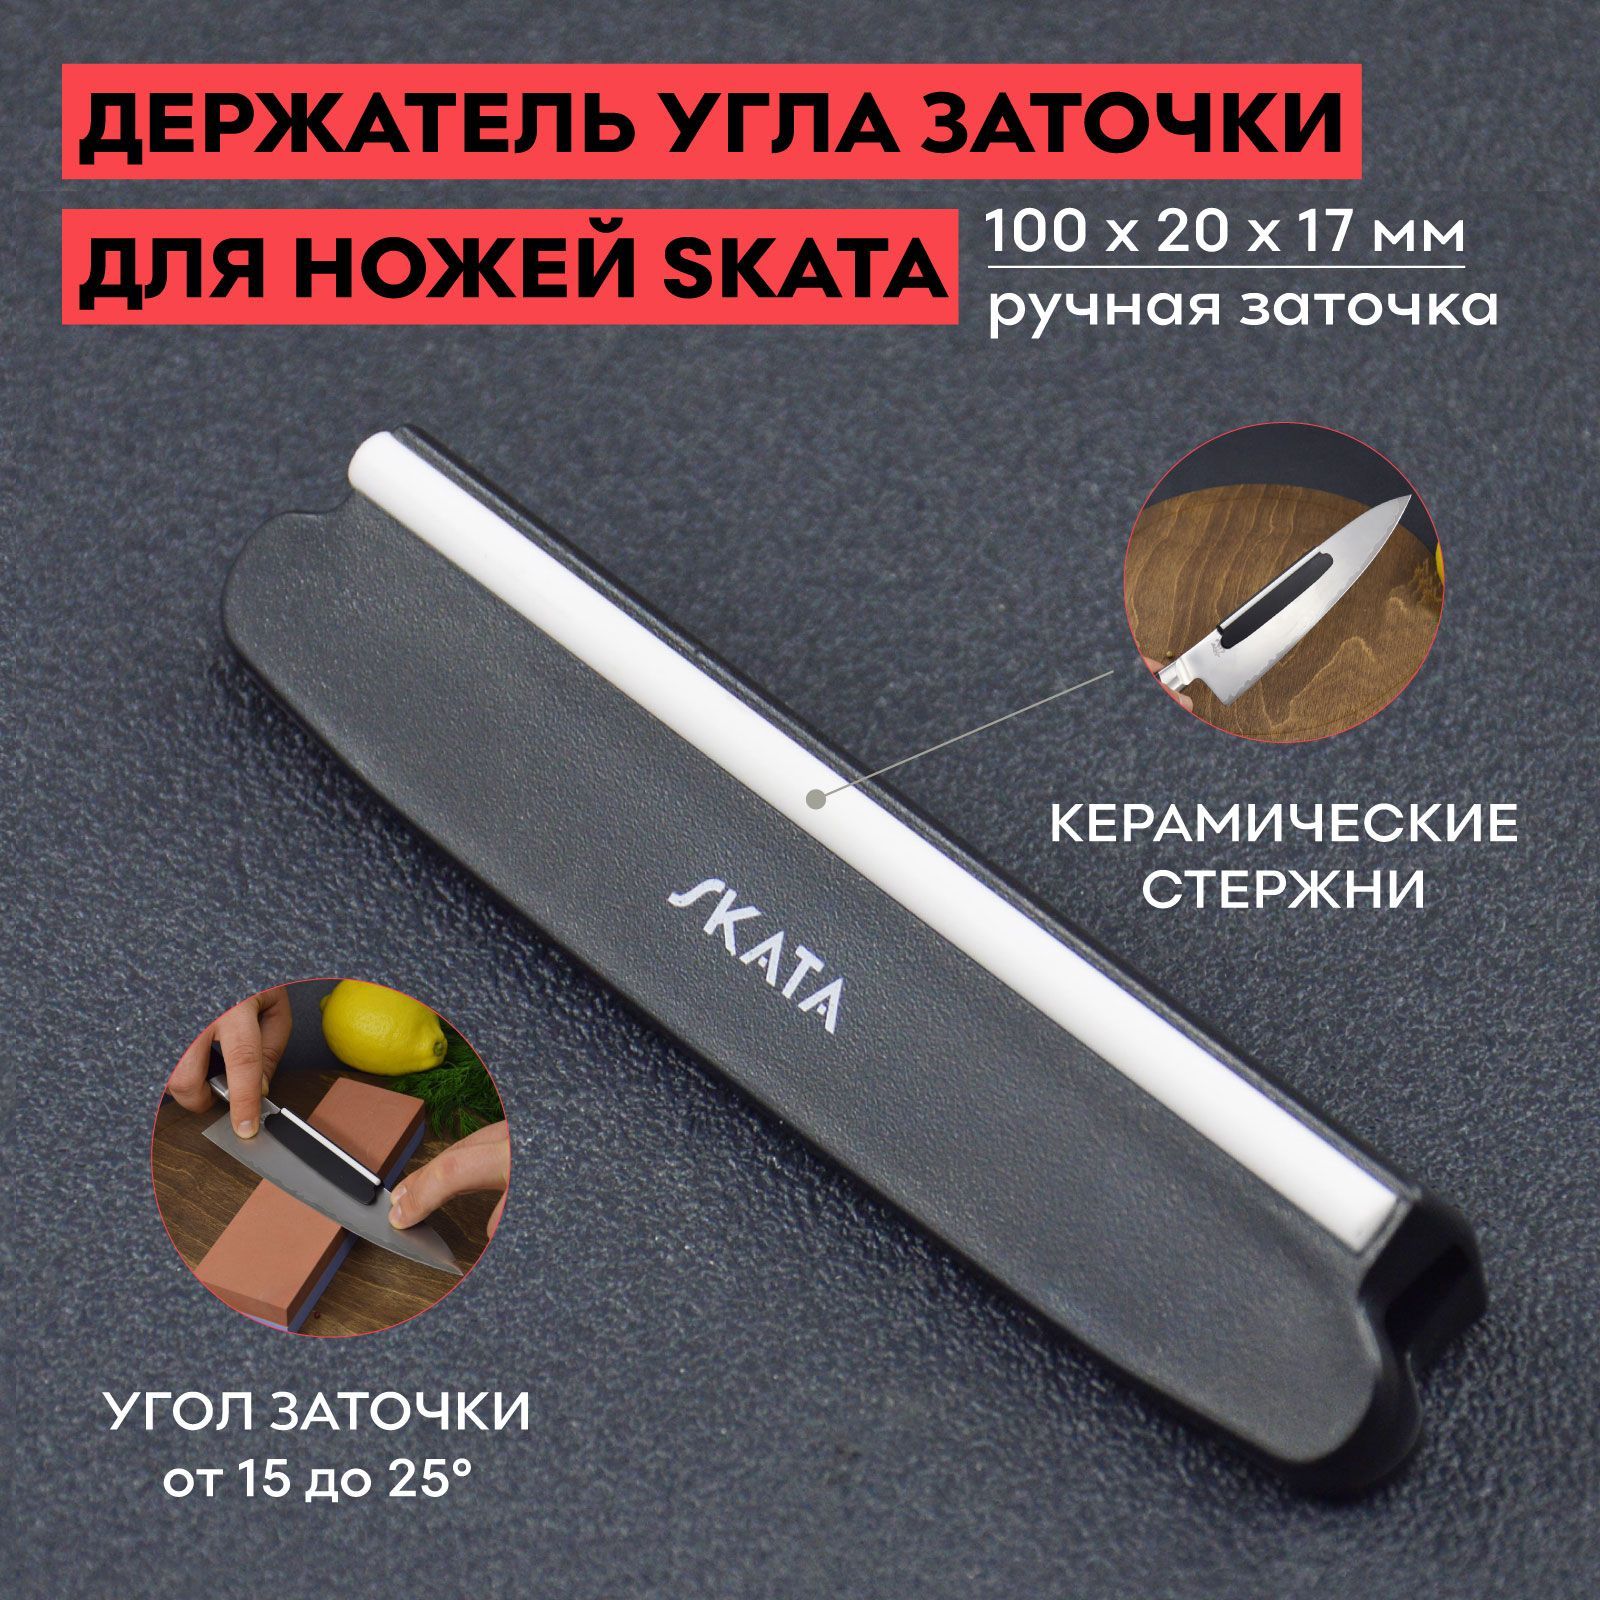 Держатель угла заточки: цена, фото, характеристики. Для профессиональных ножей. Москва